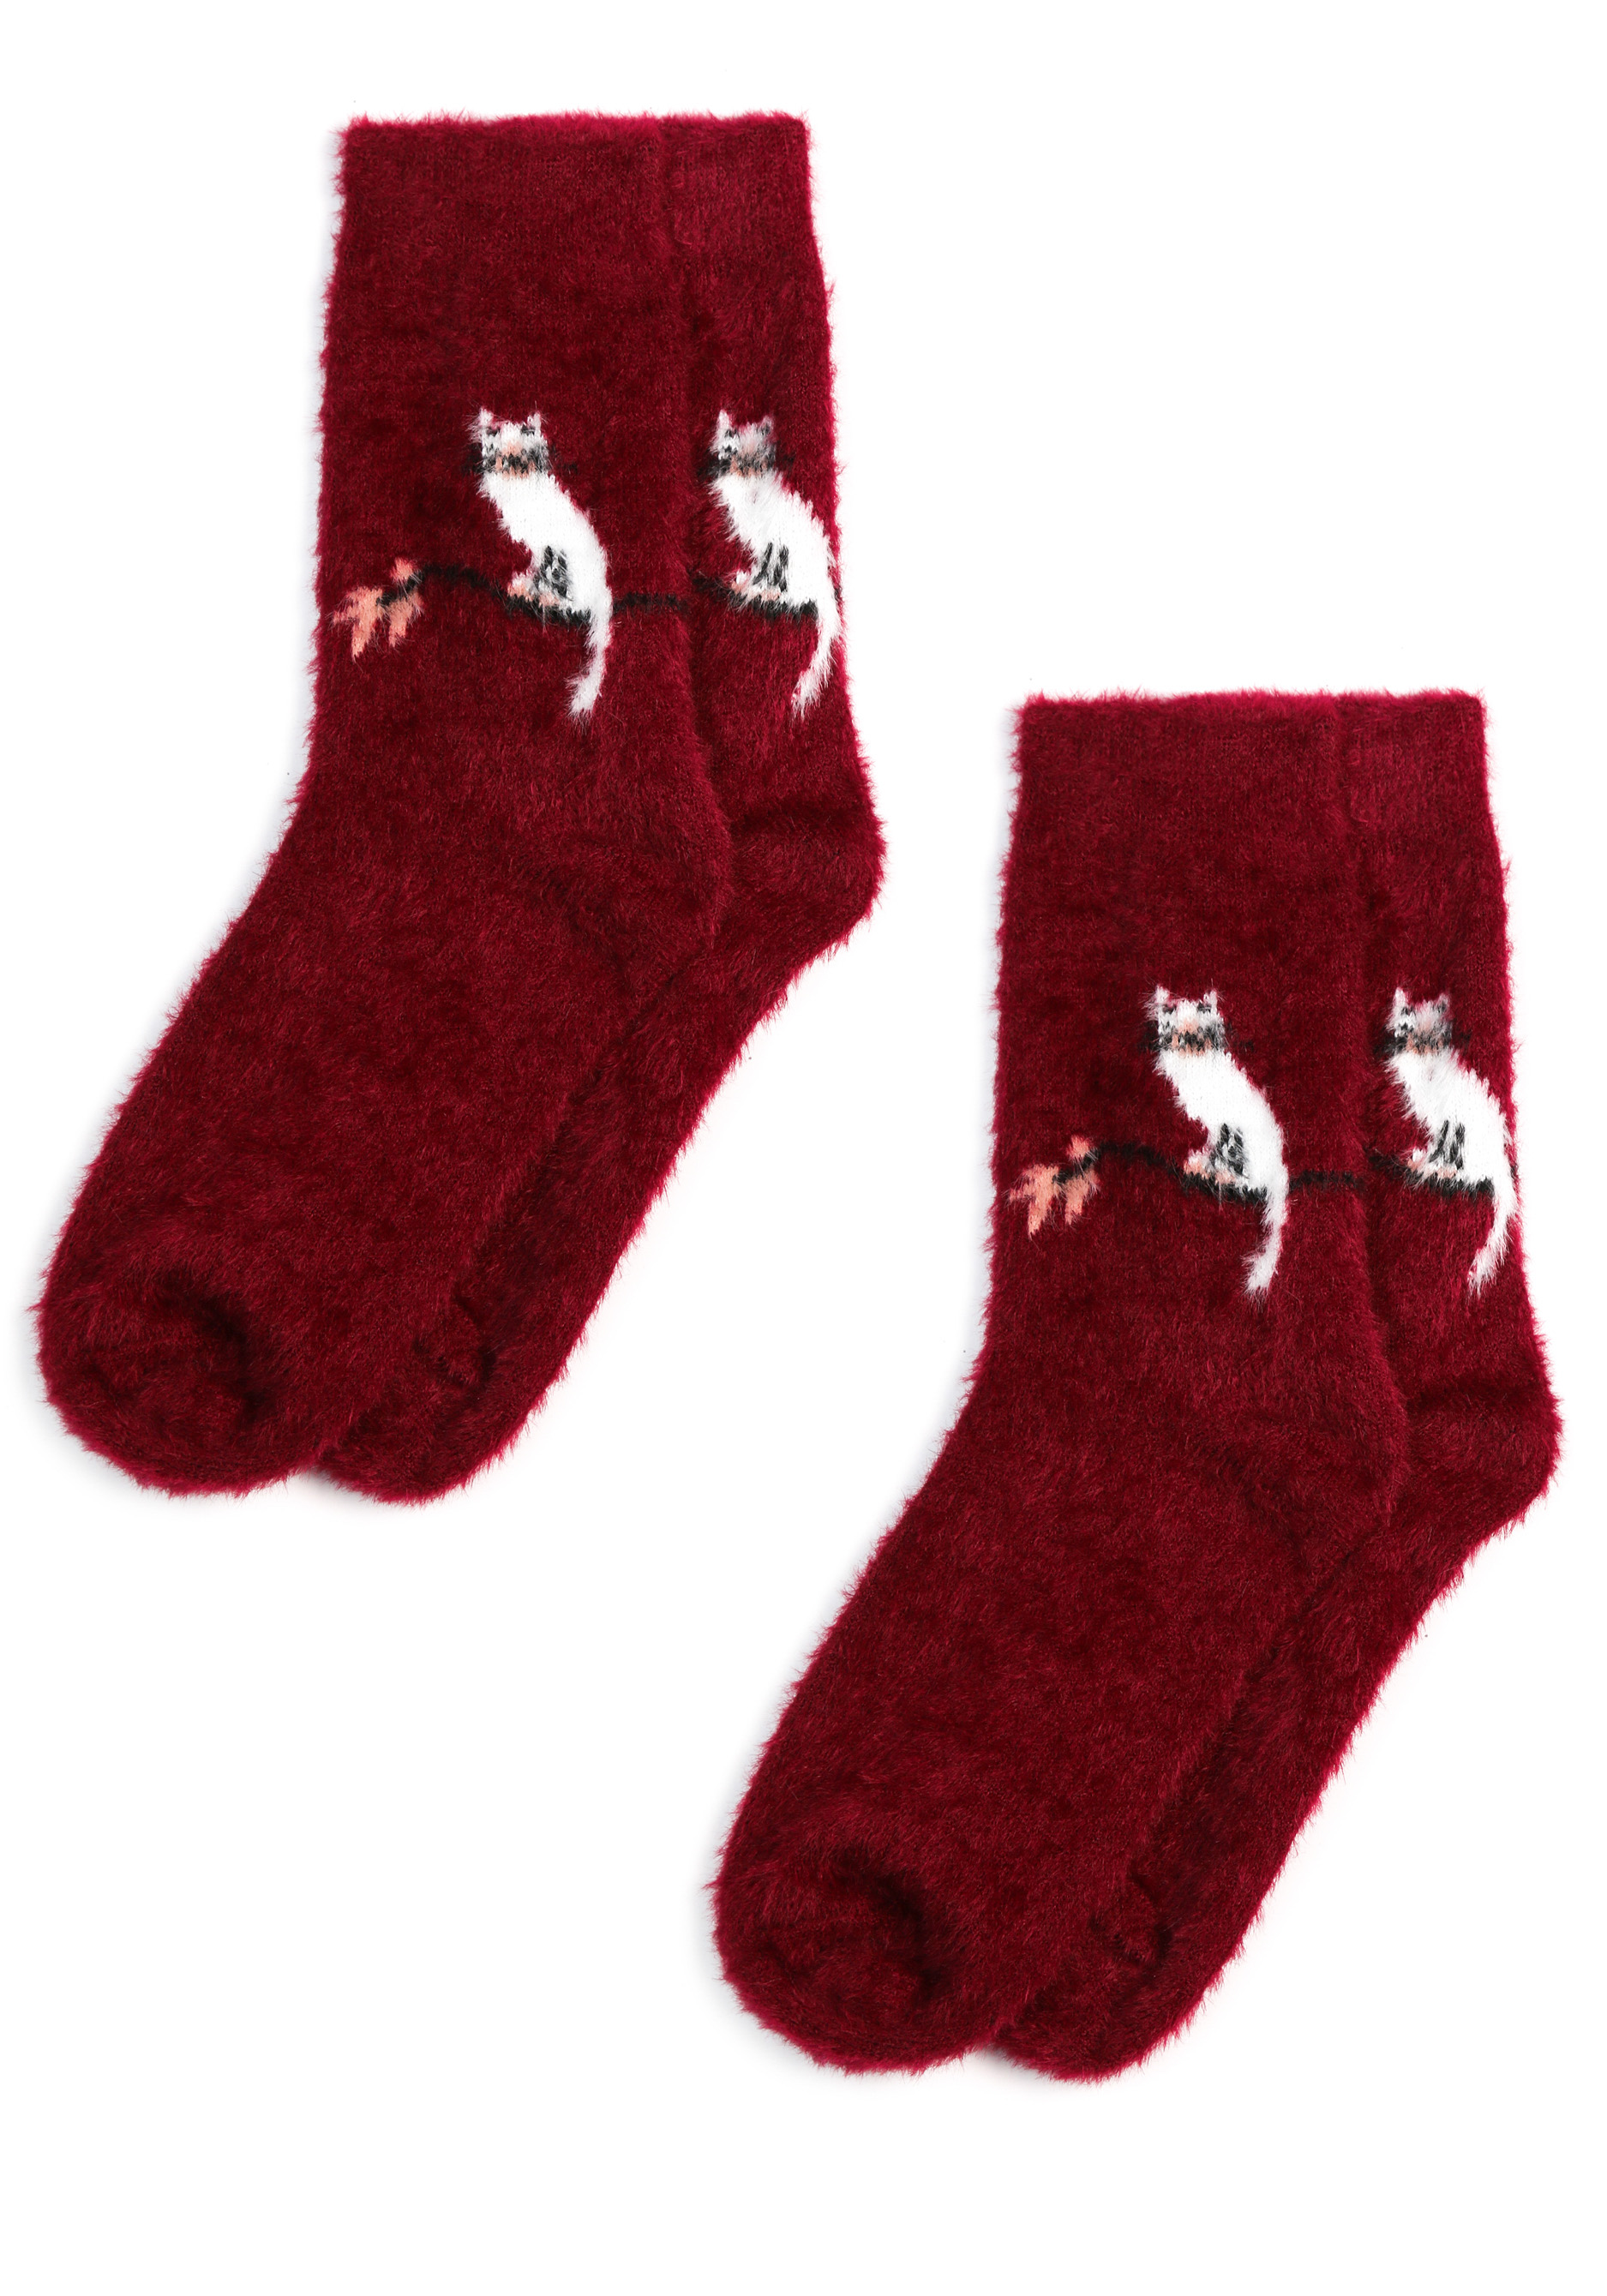 Комплект носков из шерсти норки, 2 пары, цвет черный, размер 37-41